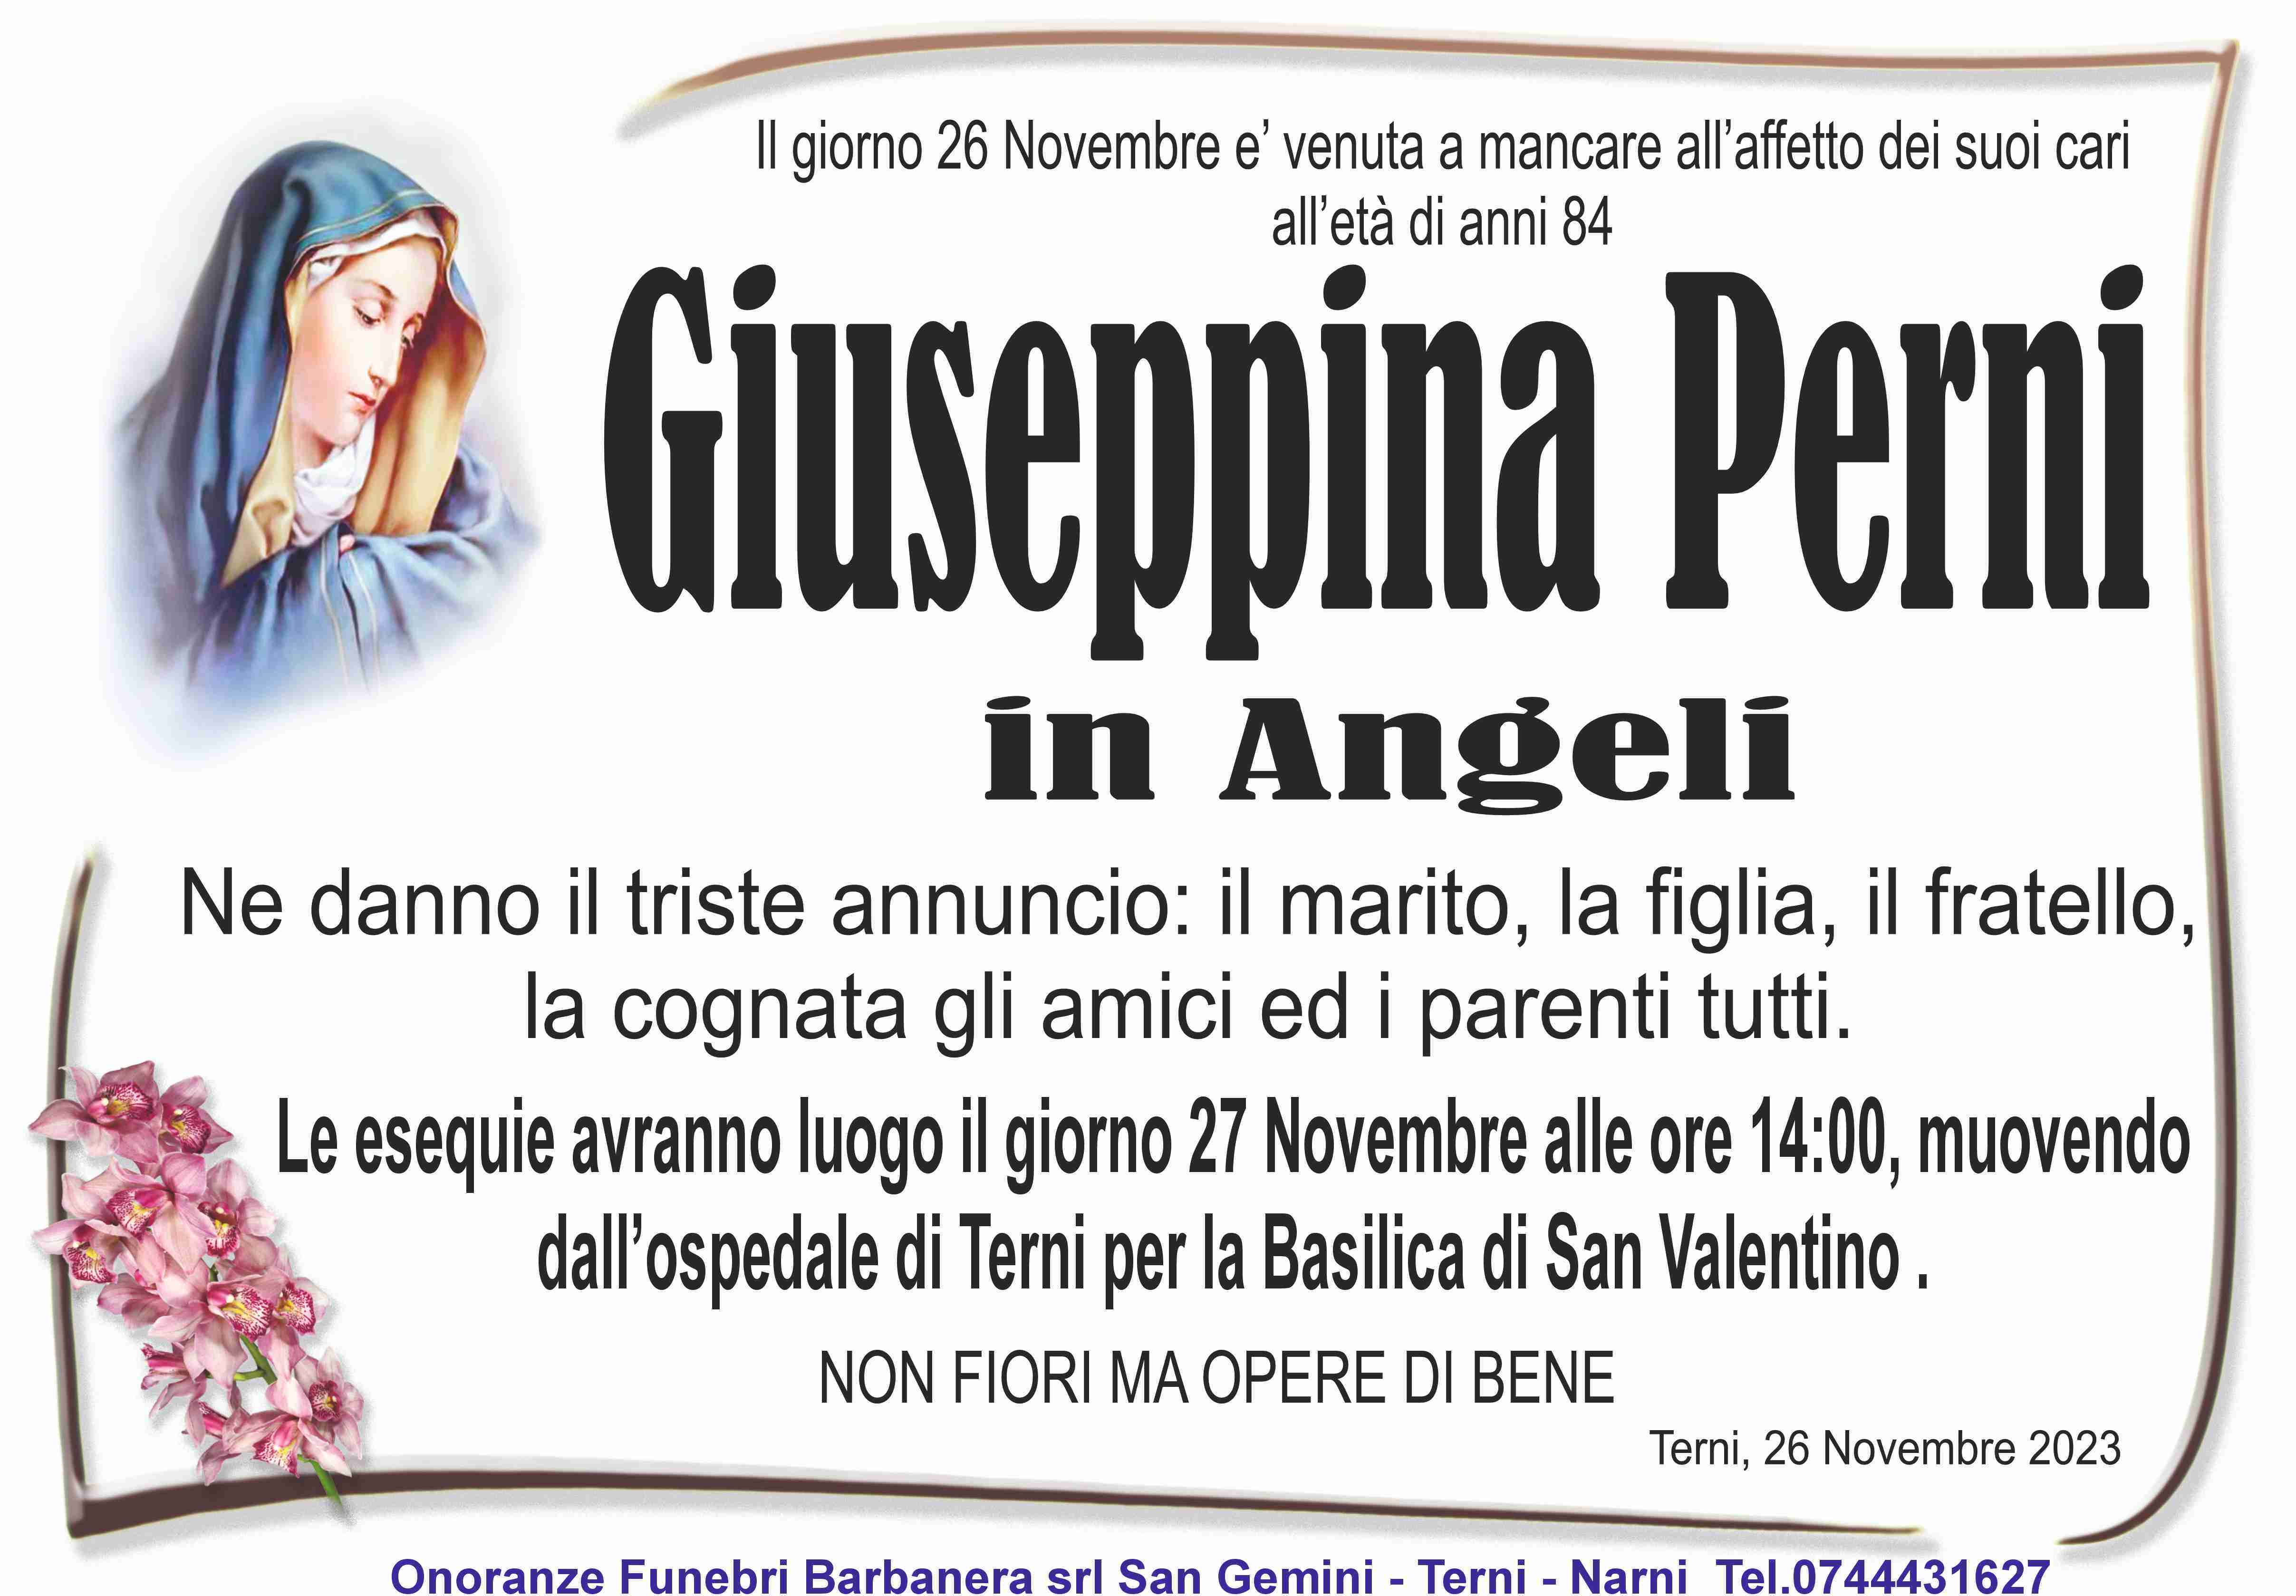 Giuseppina Perni